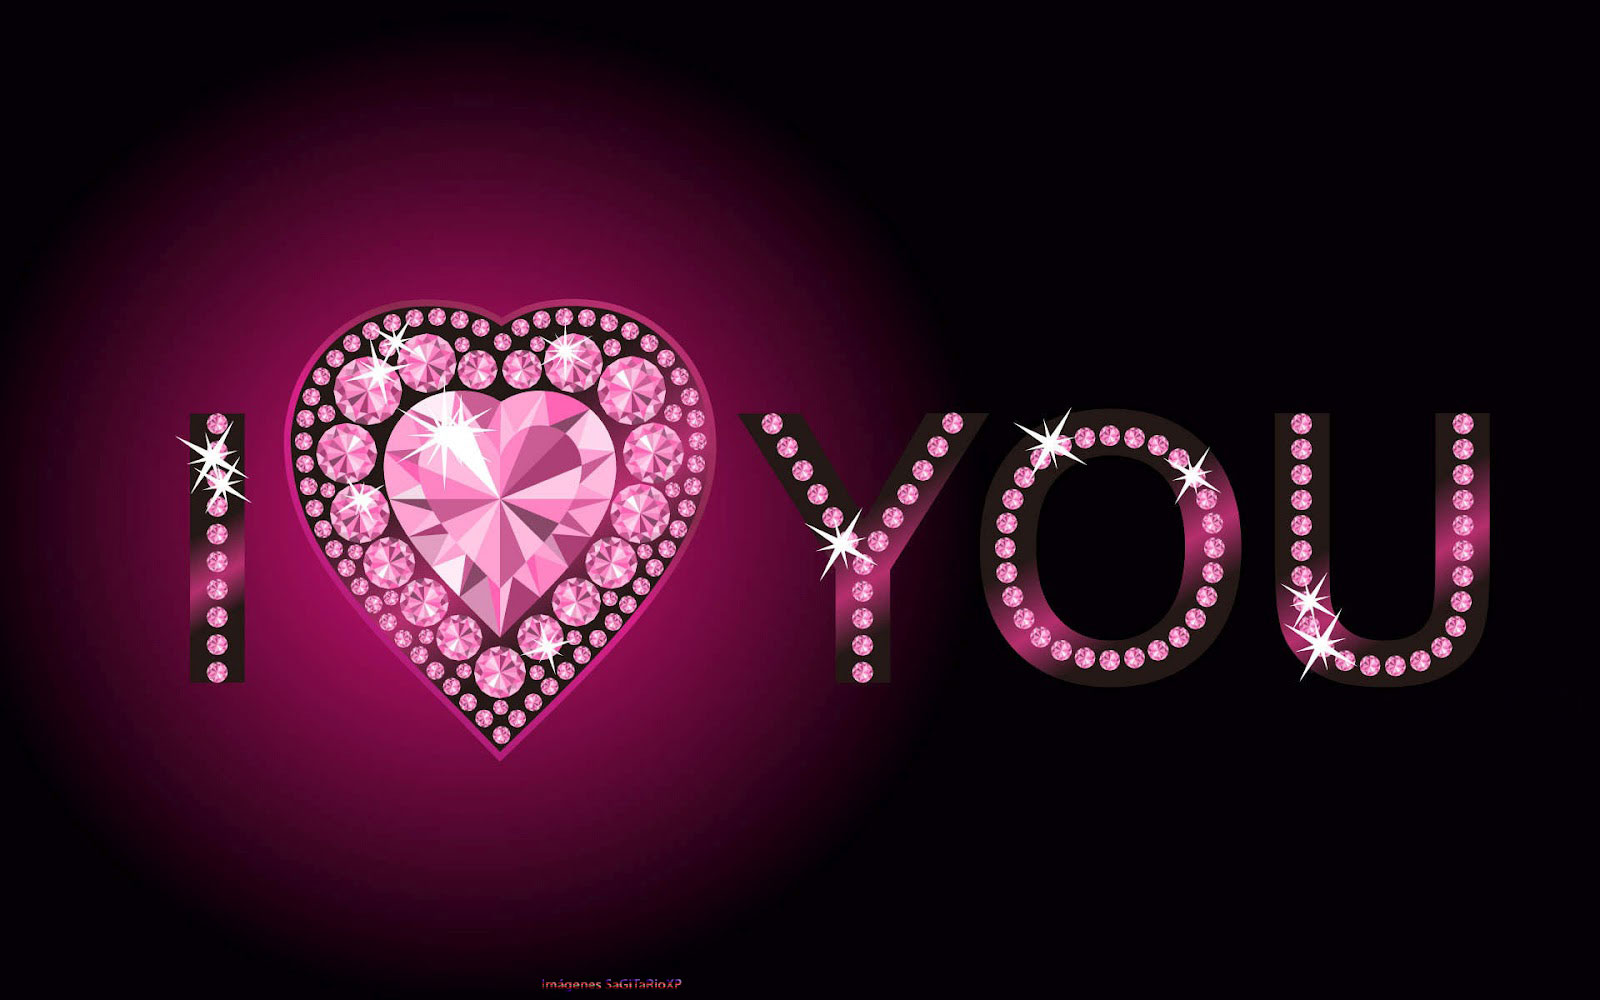 http://1.bp.blogspot.com/-uh2SsKSRV8Q/UPQ6ghvkDRI/AAAAAAAAD38/2uPCl68AbA0/s1600/i-love-you-pink-diamond-wallpapers.jpg